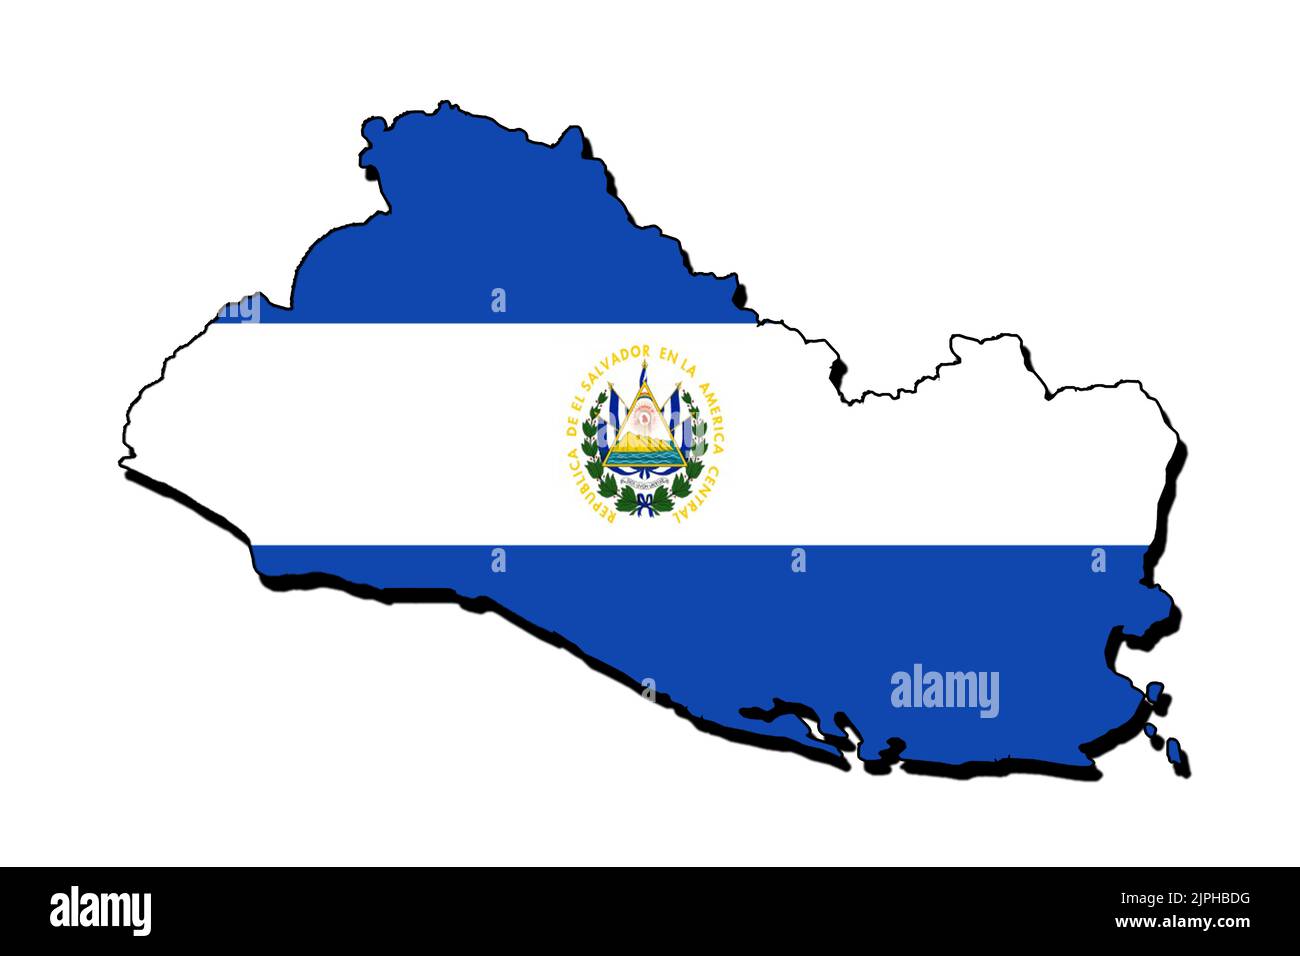 Silhouette de la carte d'el Salvador avec son drapeau Banque D'Images